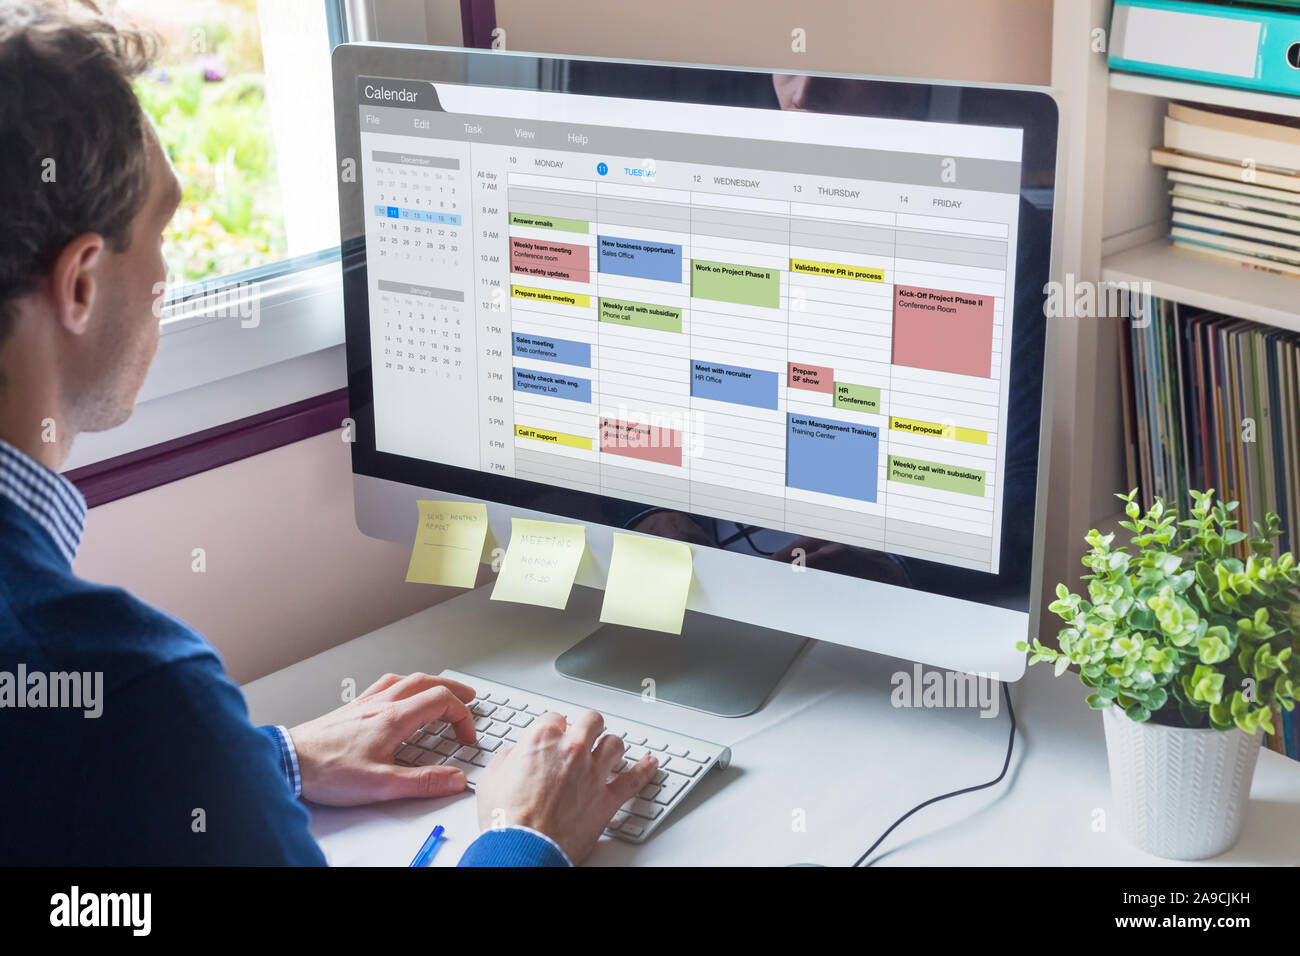 Il software del calendario mostra calendario fitto di manager con molte riunioni, le attività e gli appuntamenti durante la settimana, la gestione del tempo di organizzazione a lavorare co Foto Stock